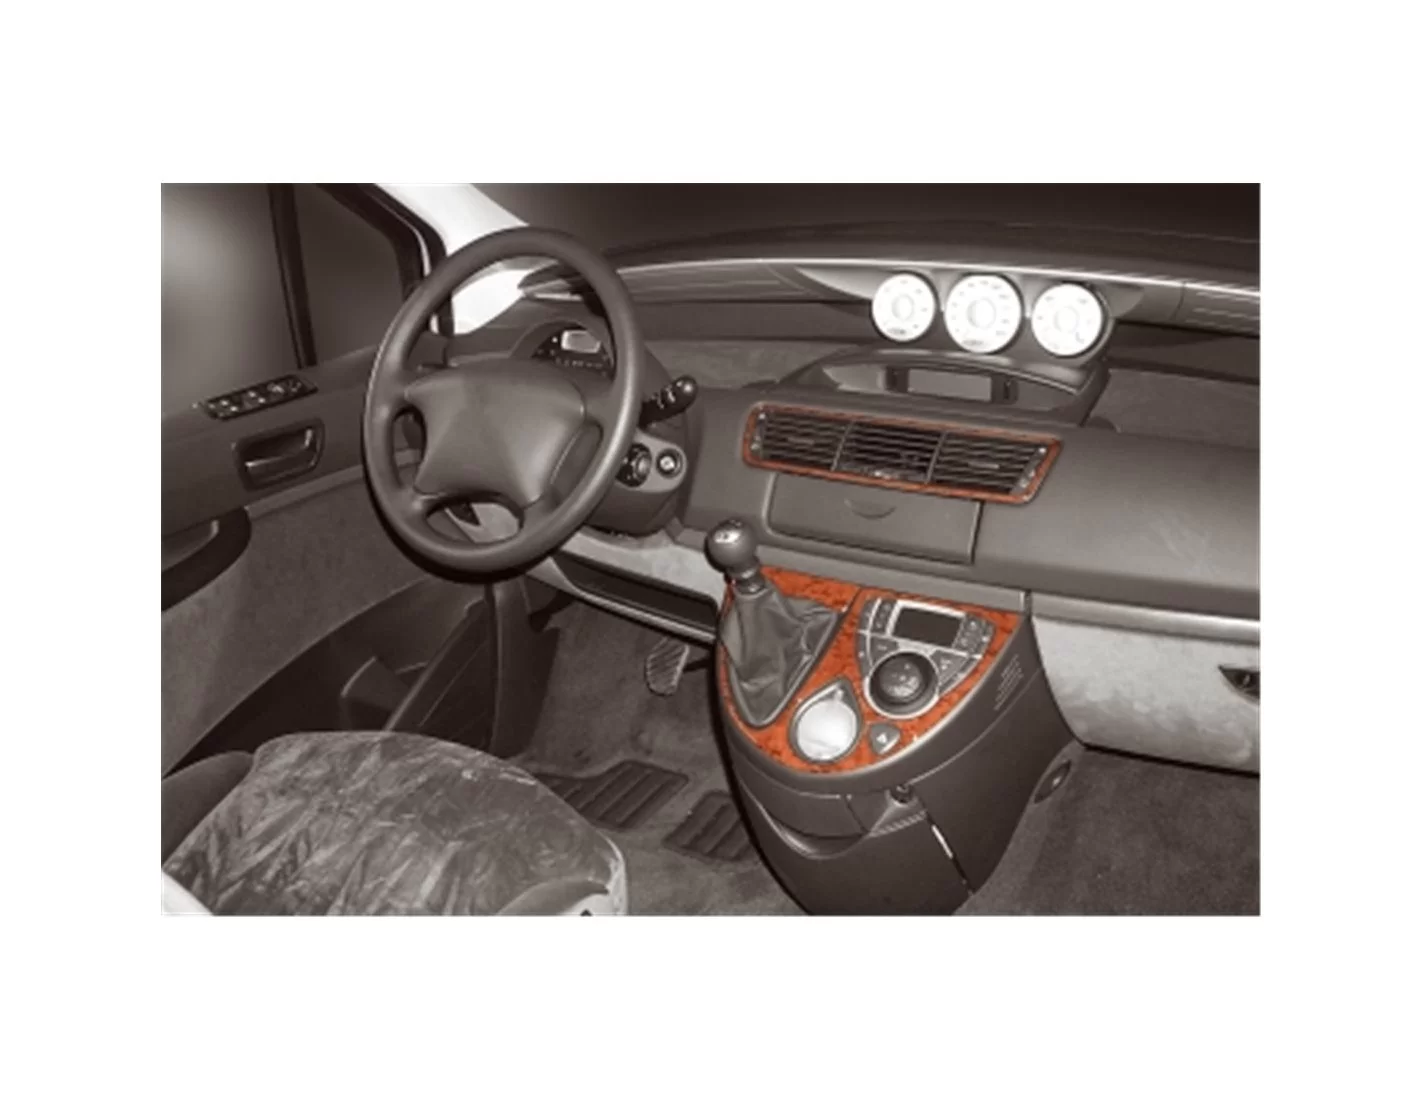 Fiat Ulysse 02.2002 3M 3D Interior Dashboard Trim Kit Dash Trim Dekor 4-Parts